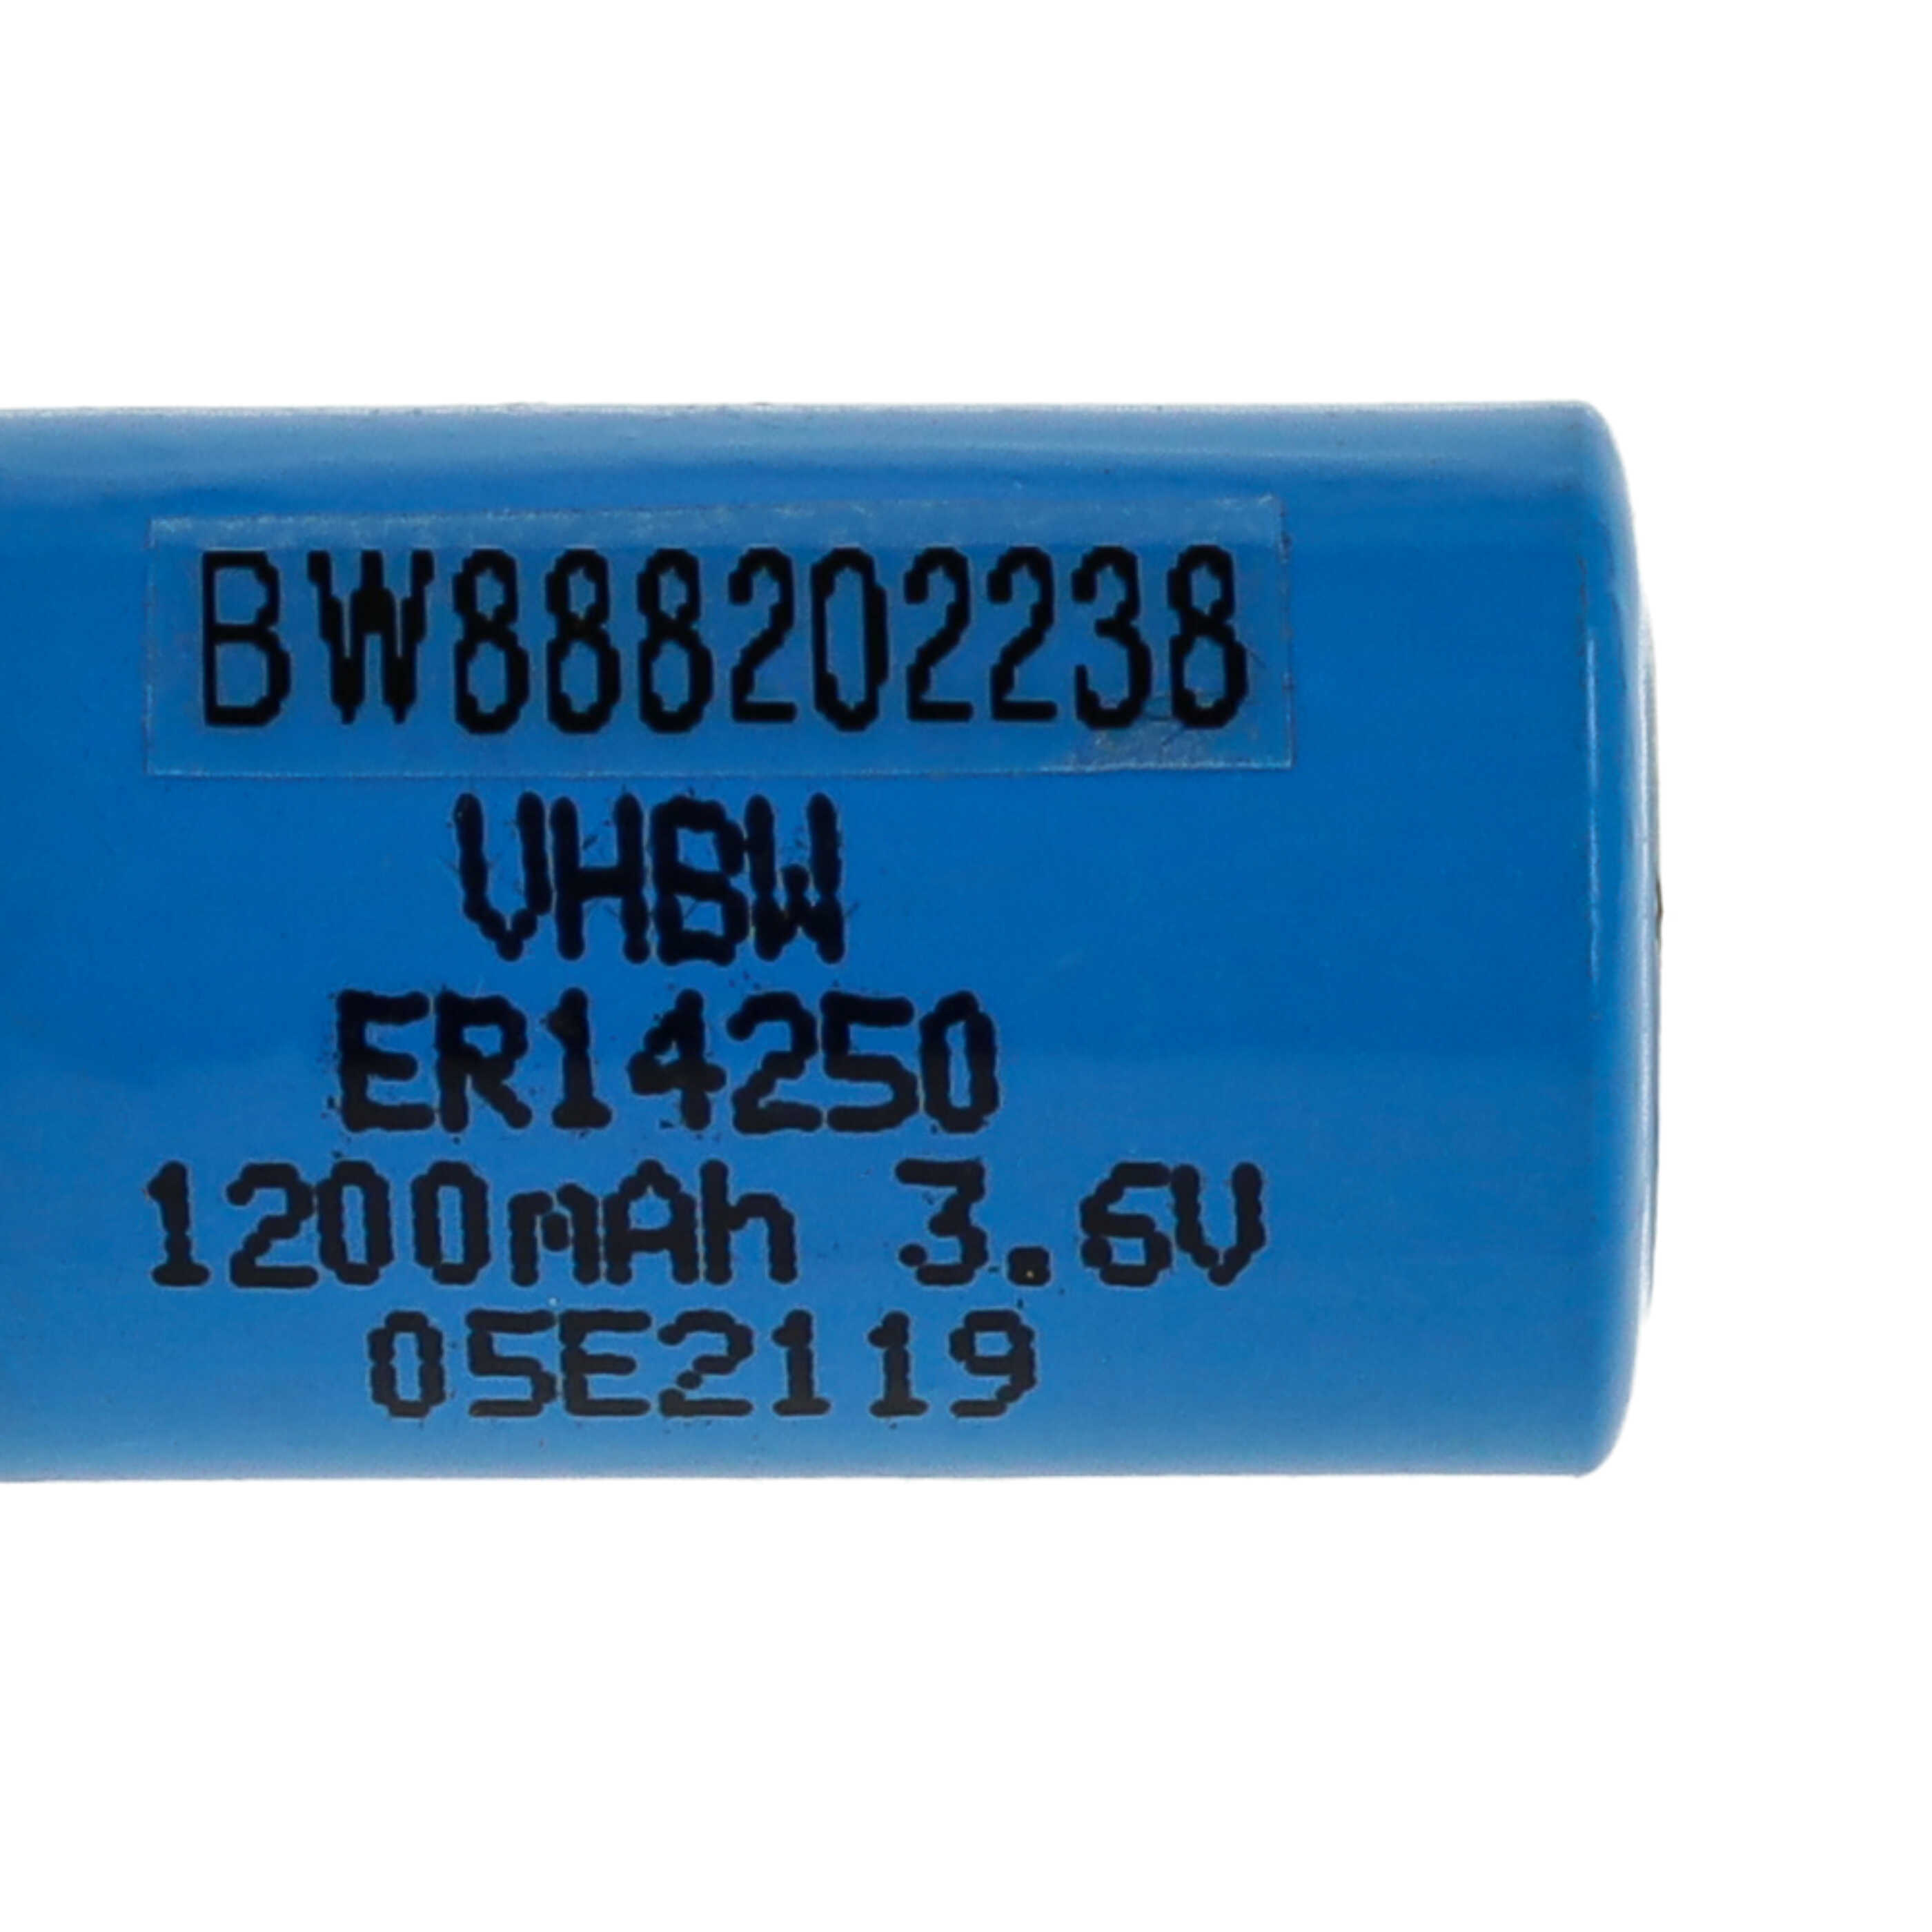 Bateria ER14250 zamiennik 1/2AA, 1770-XZ, 3B26, 418-0076, 60-0576-100 - 1200 mAh 3,6 V Li-SOCl2